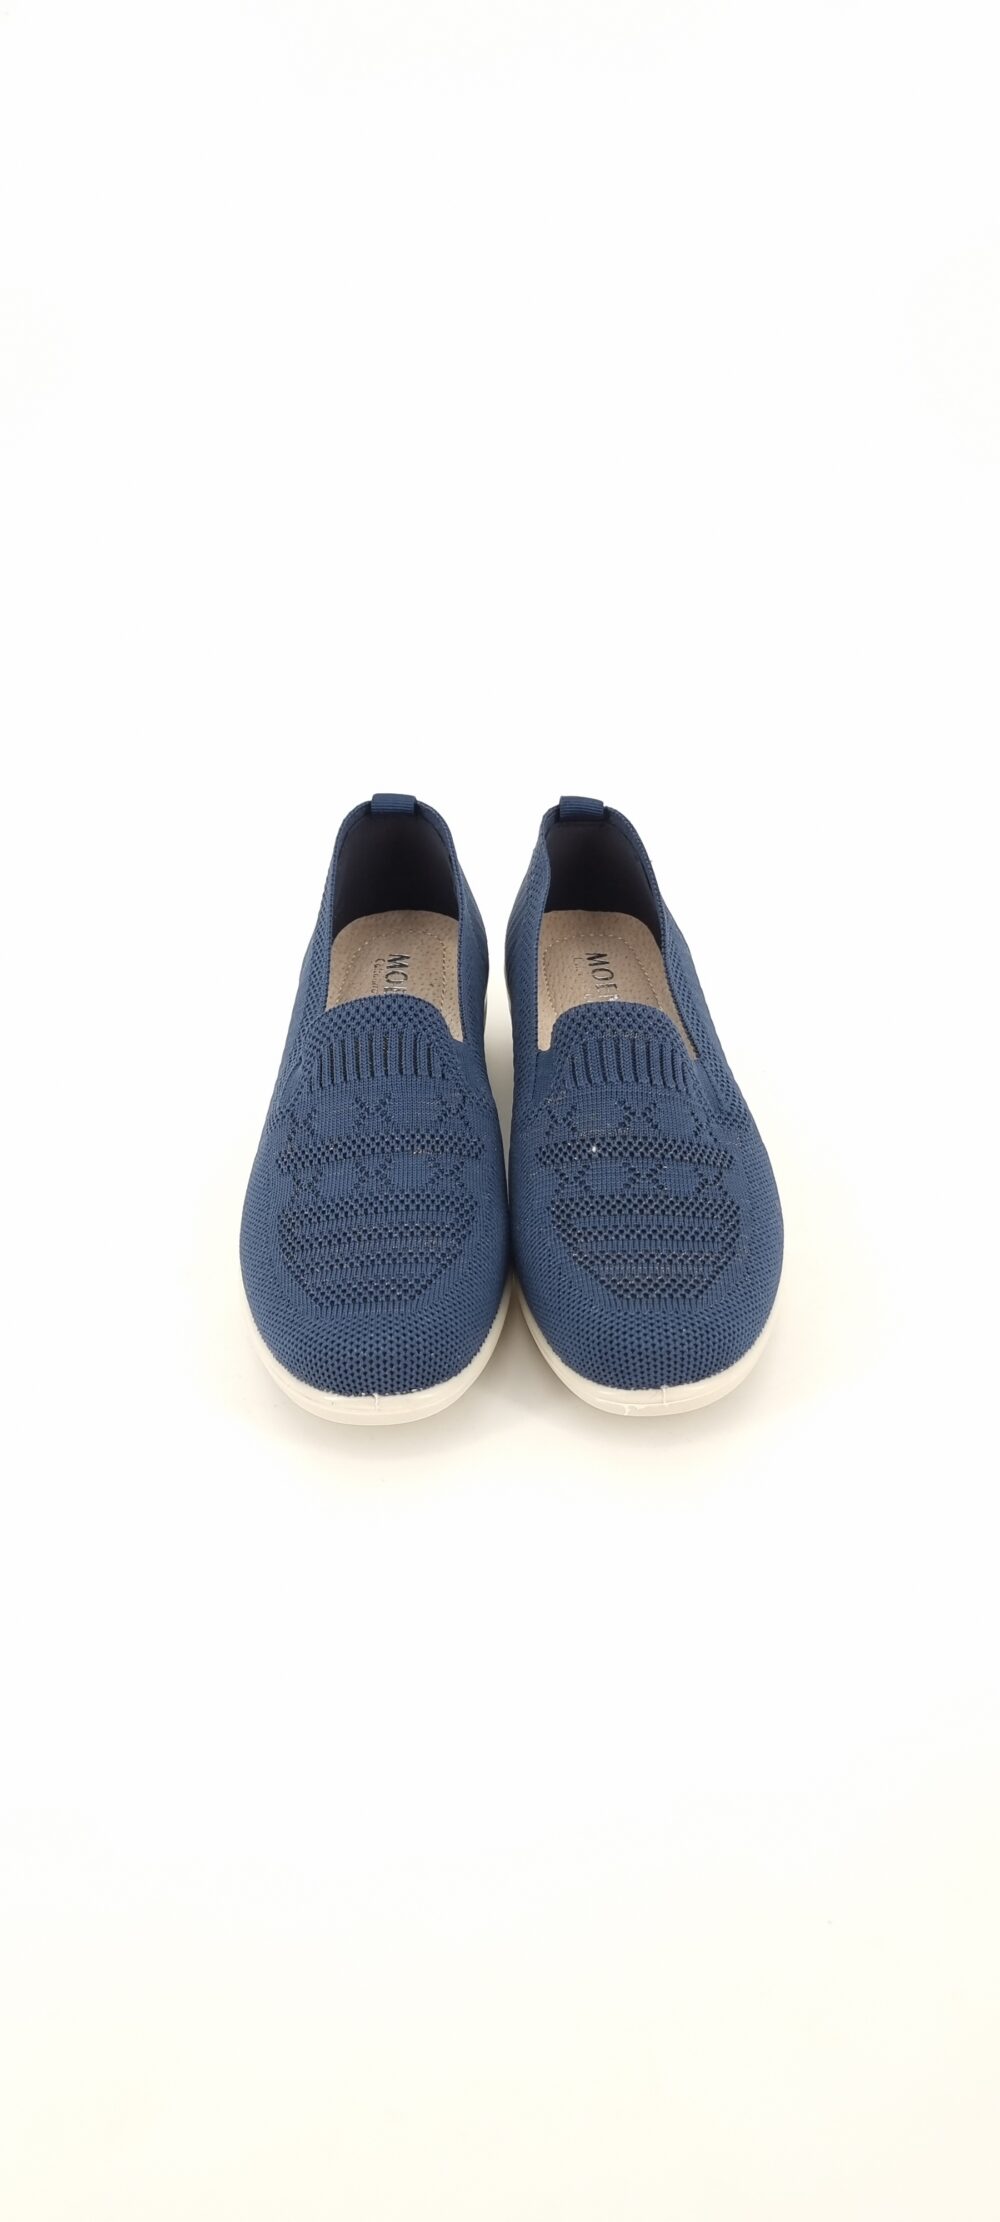 Παπούτσι υφασμάτινο με ενιαίο τακουνάκι μπλε